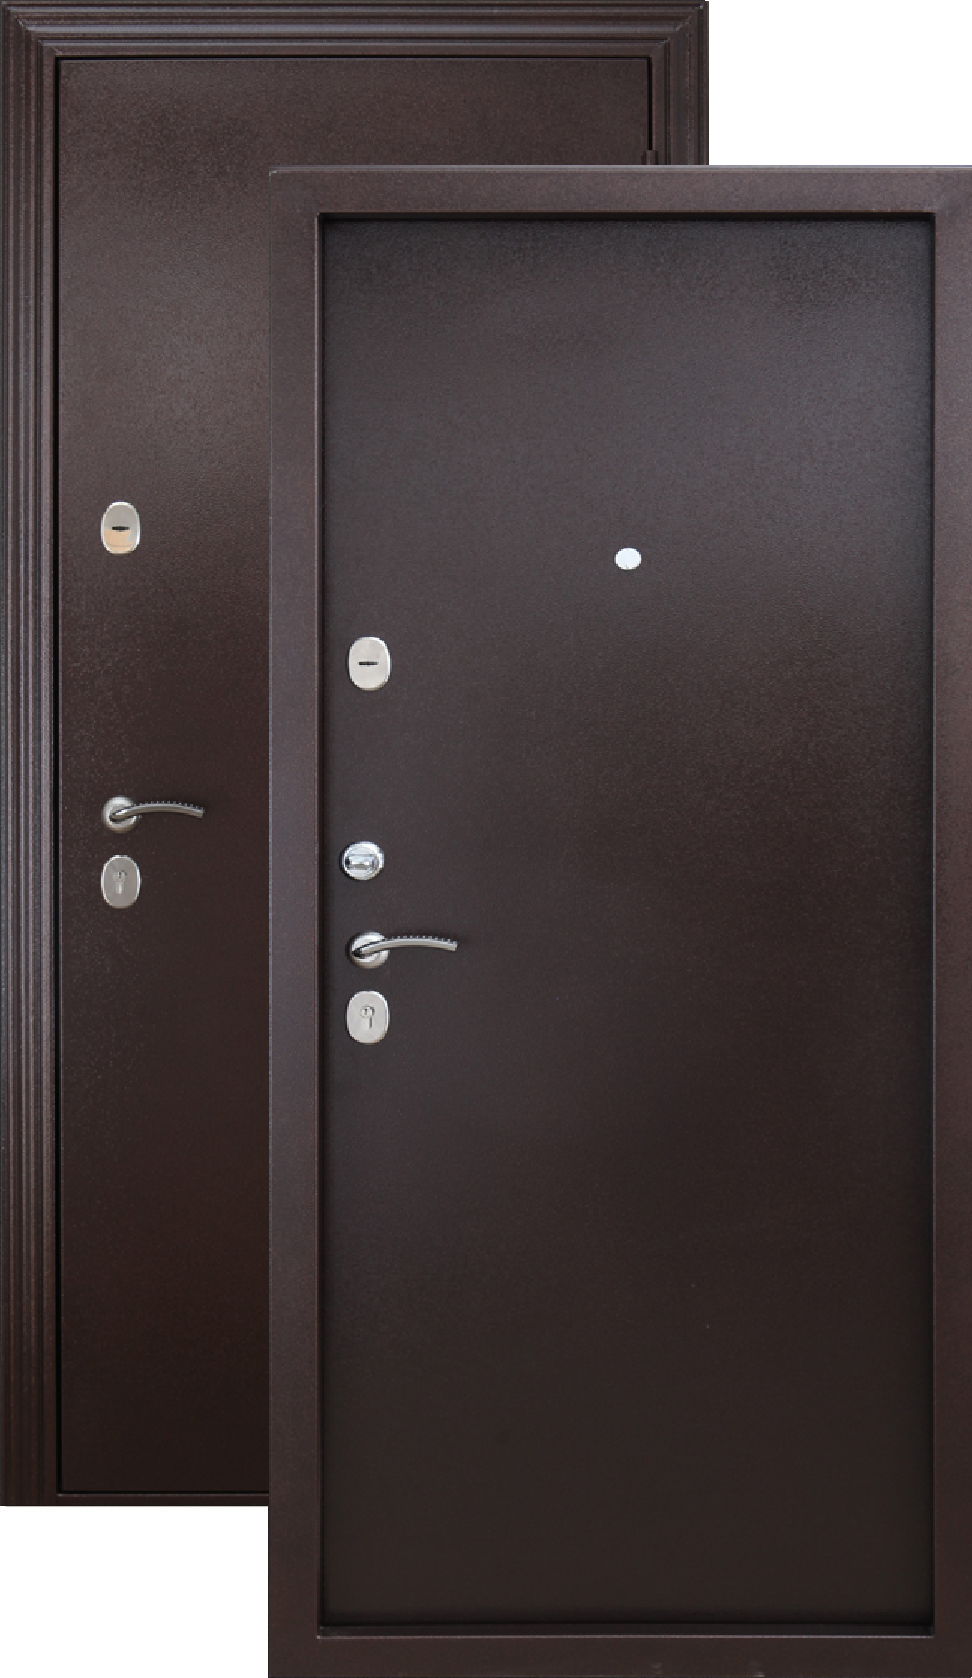 Купить металлическую дверь в красноярске. Дверь входная Гарда медный антик. Дверь Гарда металл/металл медный антик. Дверь металлическая 7,5см Гарда 960х2050мм металл/металл левая. Дверь металл Isoterma медный антик.